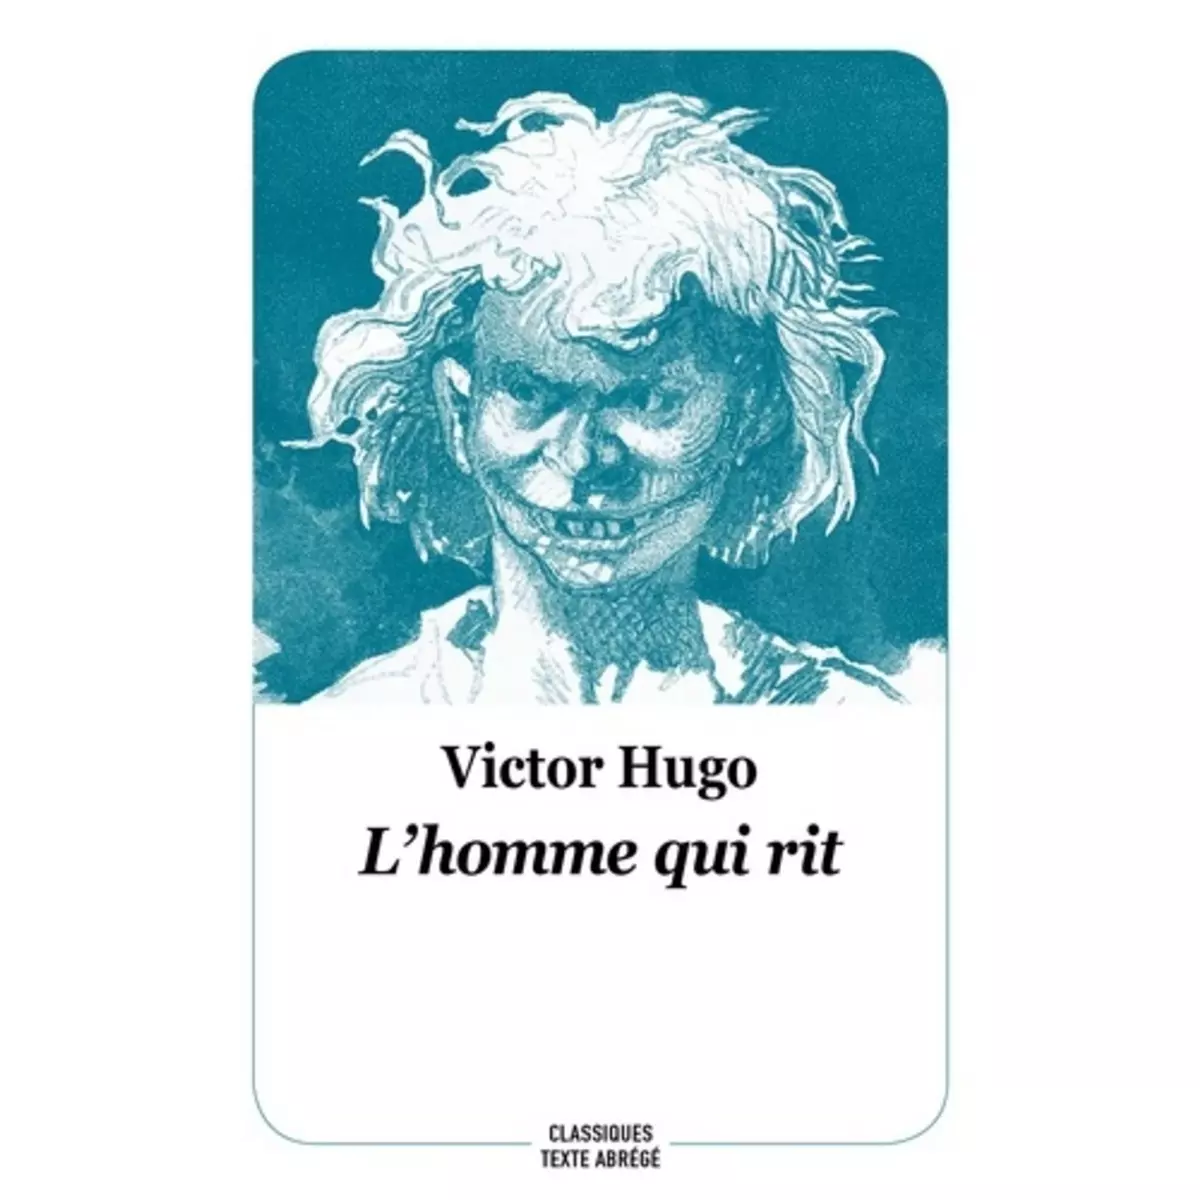  L'HOMME QUI RIT. TEXTE ABREGE, Hugo Victor